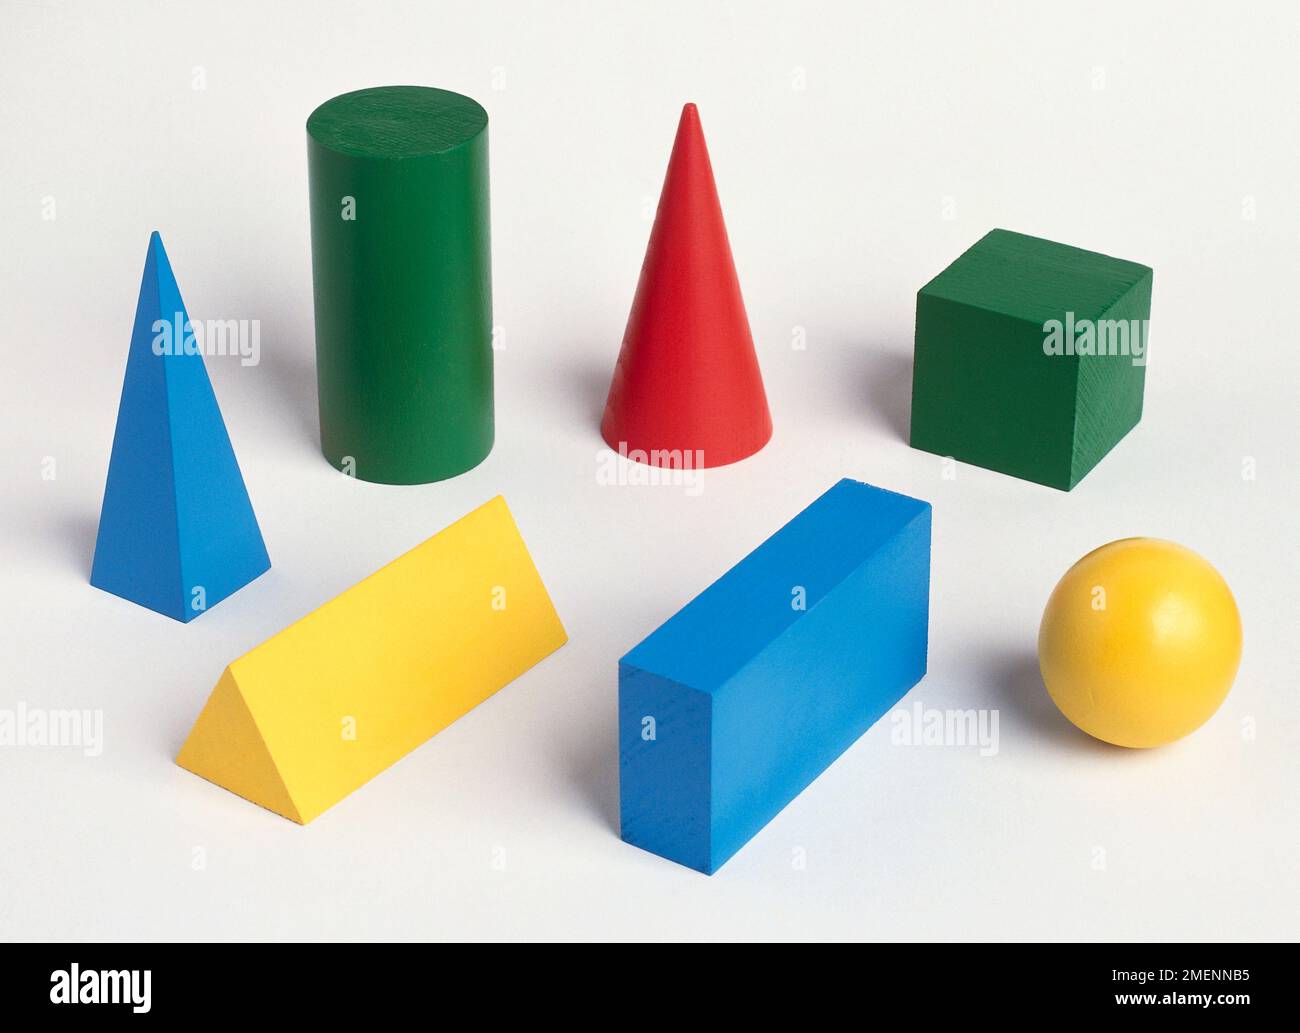 Una collezione di oggetti tridimensionali di forme diverse tra cui sfera, cubo, cono, cilindro, piramide, prisma triangolare e prisma rettangolare. Foto Stock